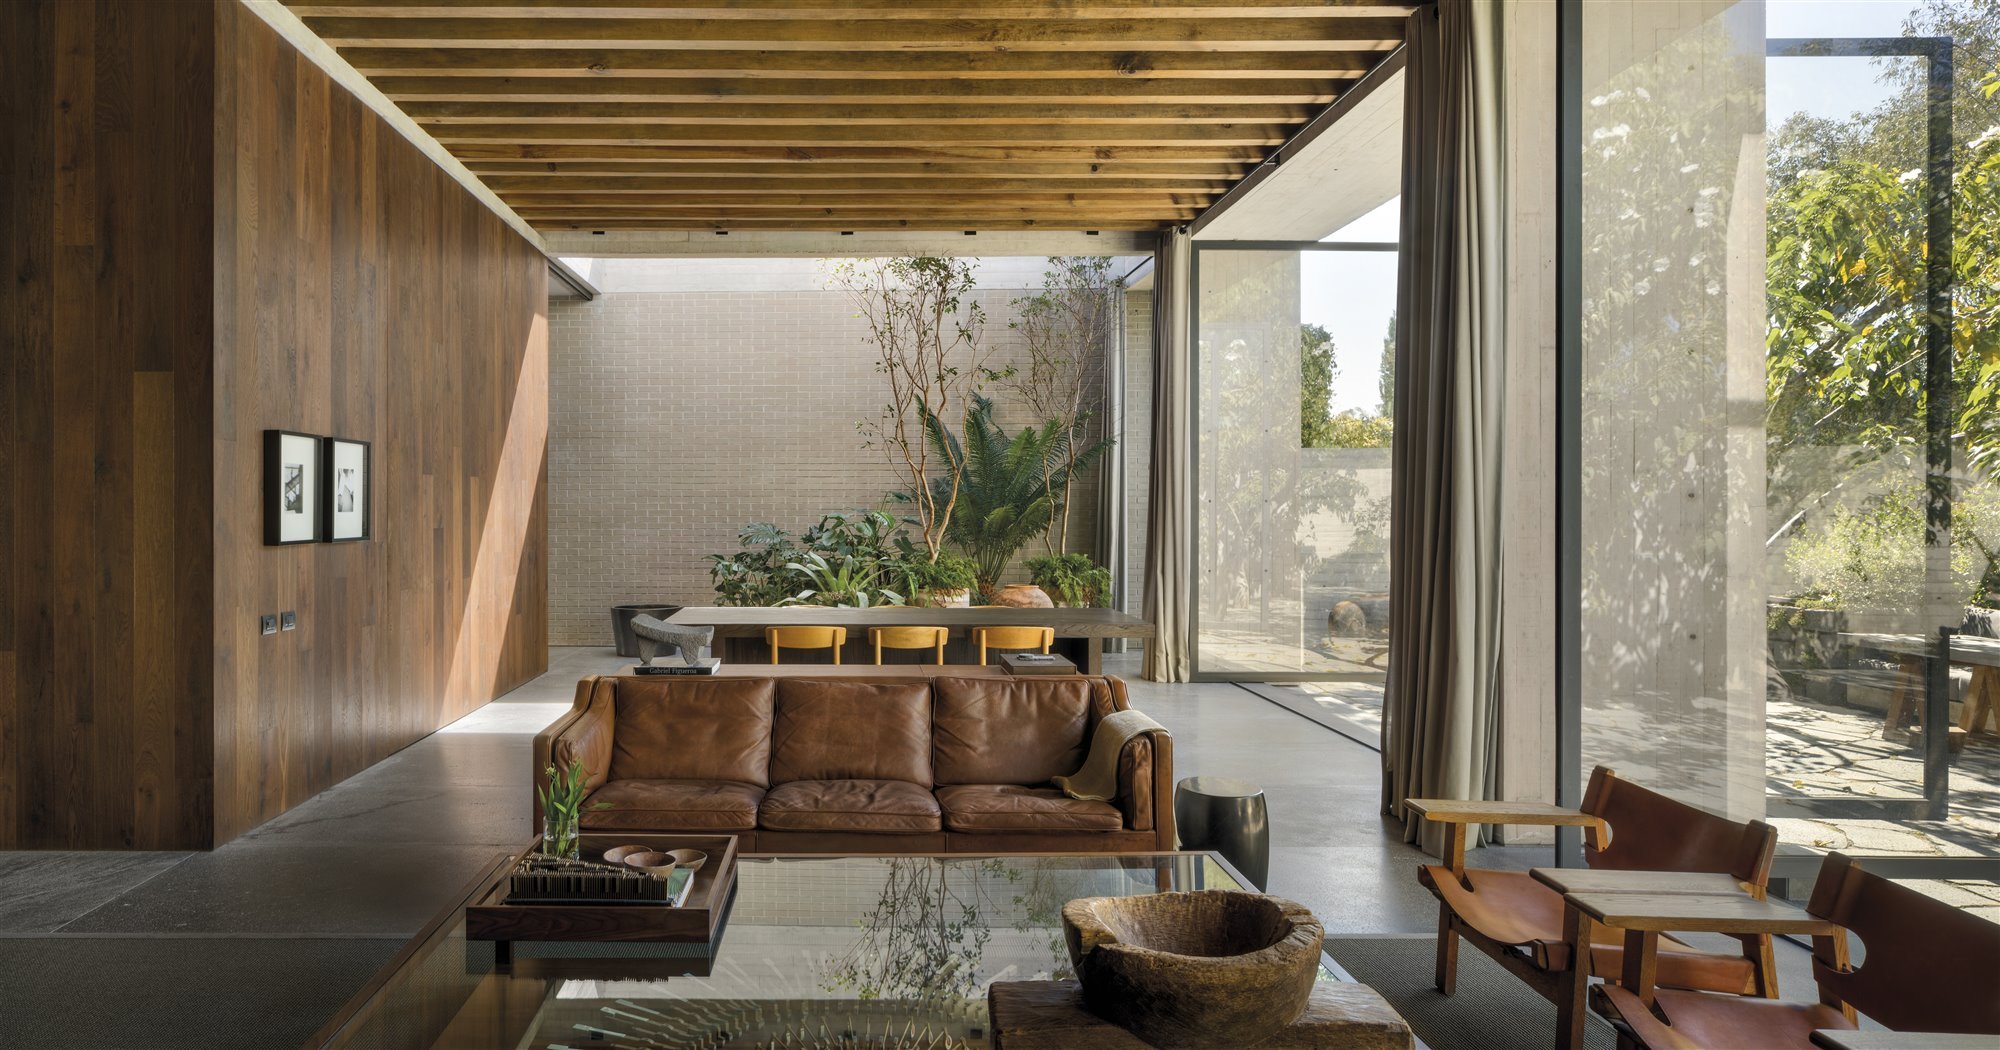 Casa moderna con interiores de madera en Mexico salon con sofas de piel